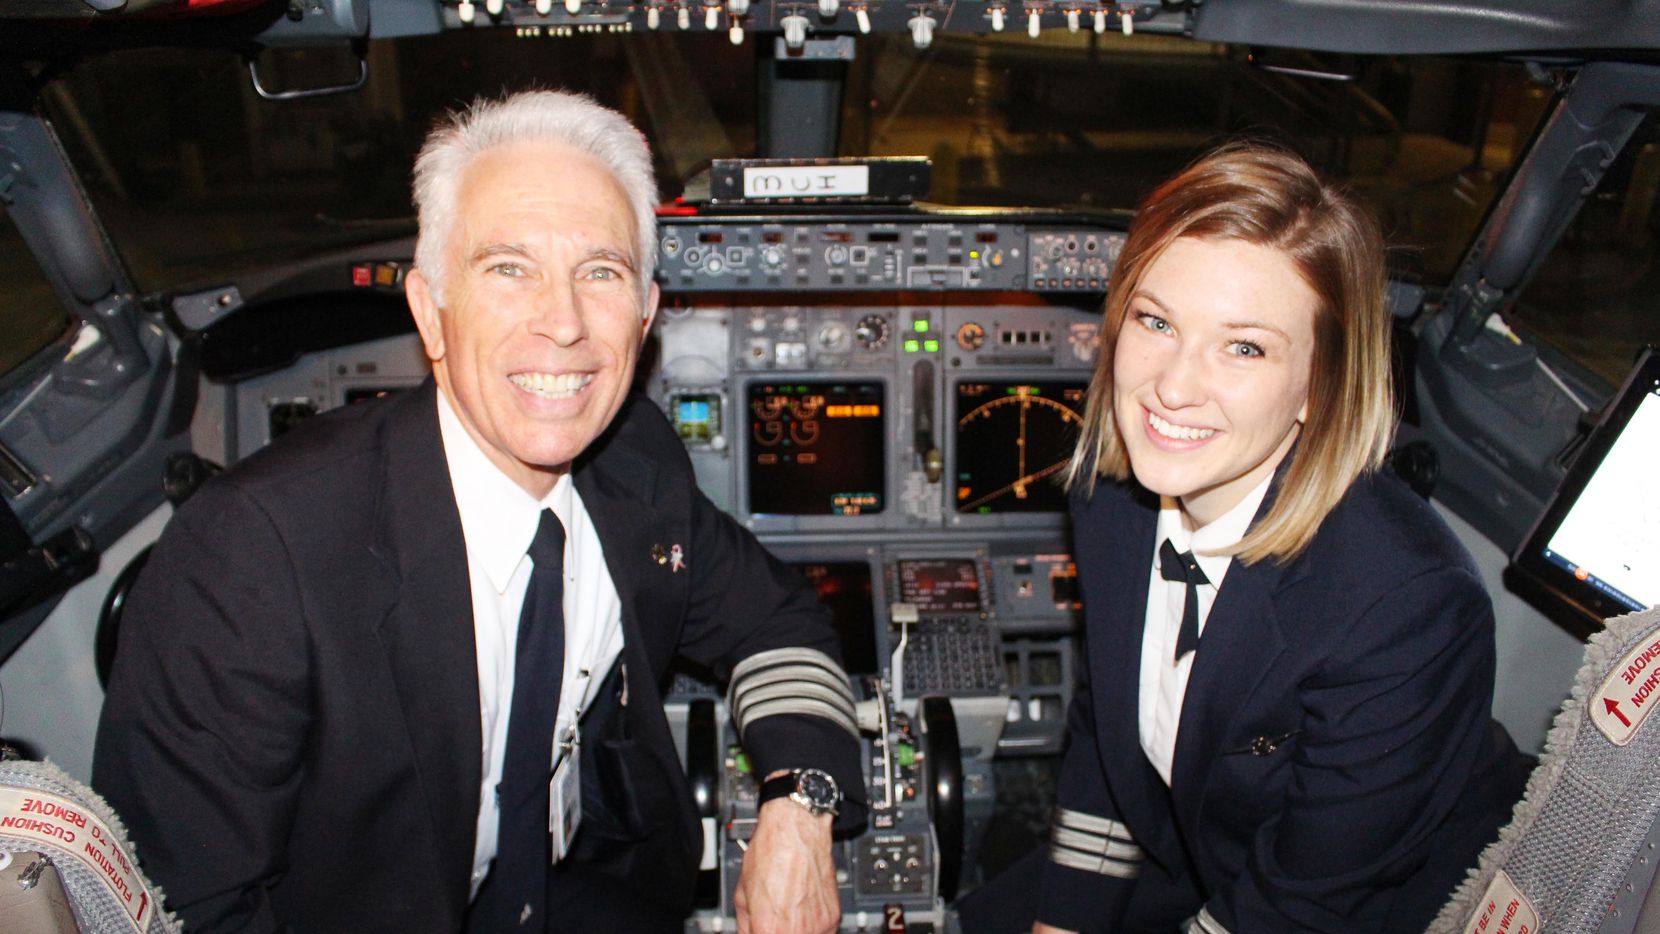 First officer. American Airlines Captain. Алвин Скотт пилот. Джесси Браун пилот дочь. Мать и дочь пилоты.